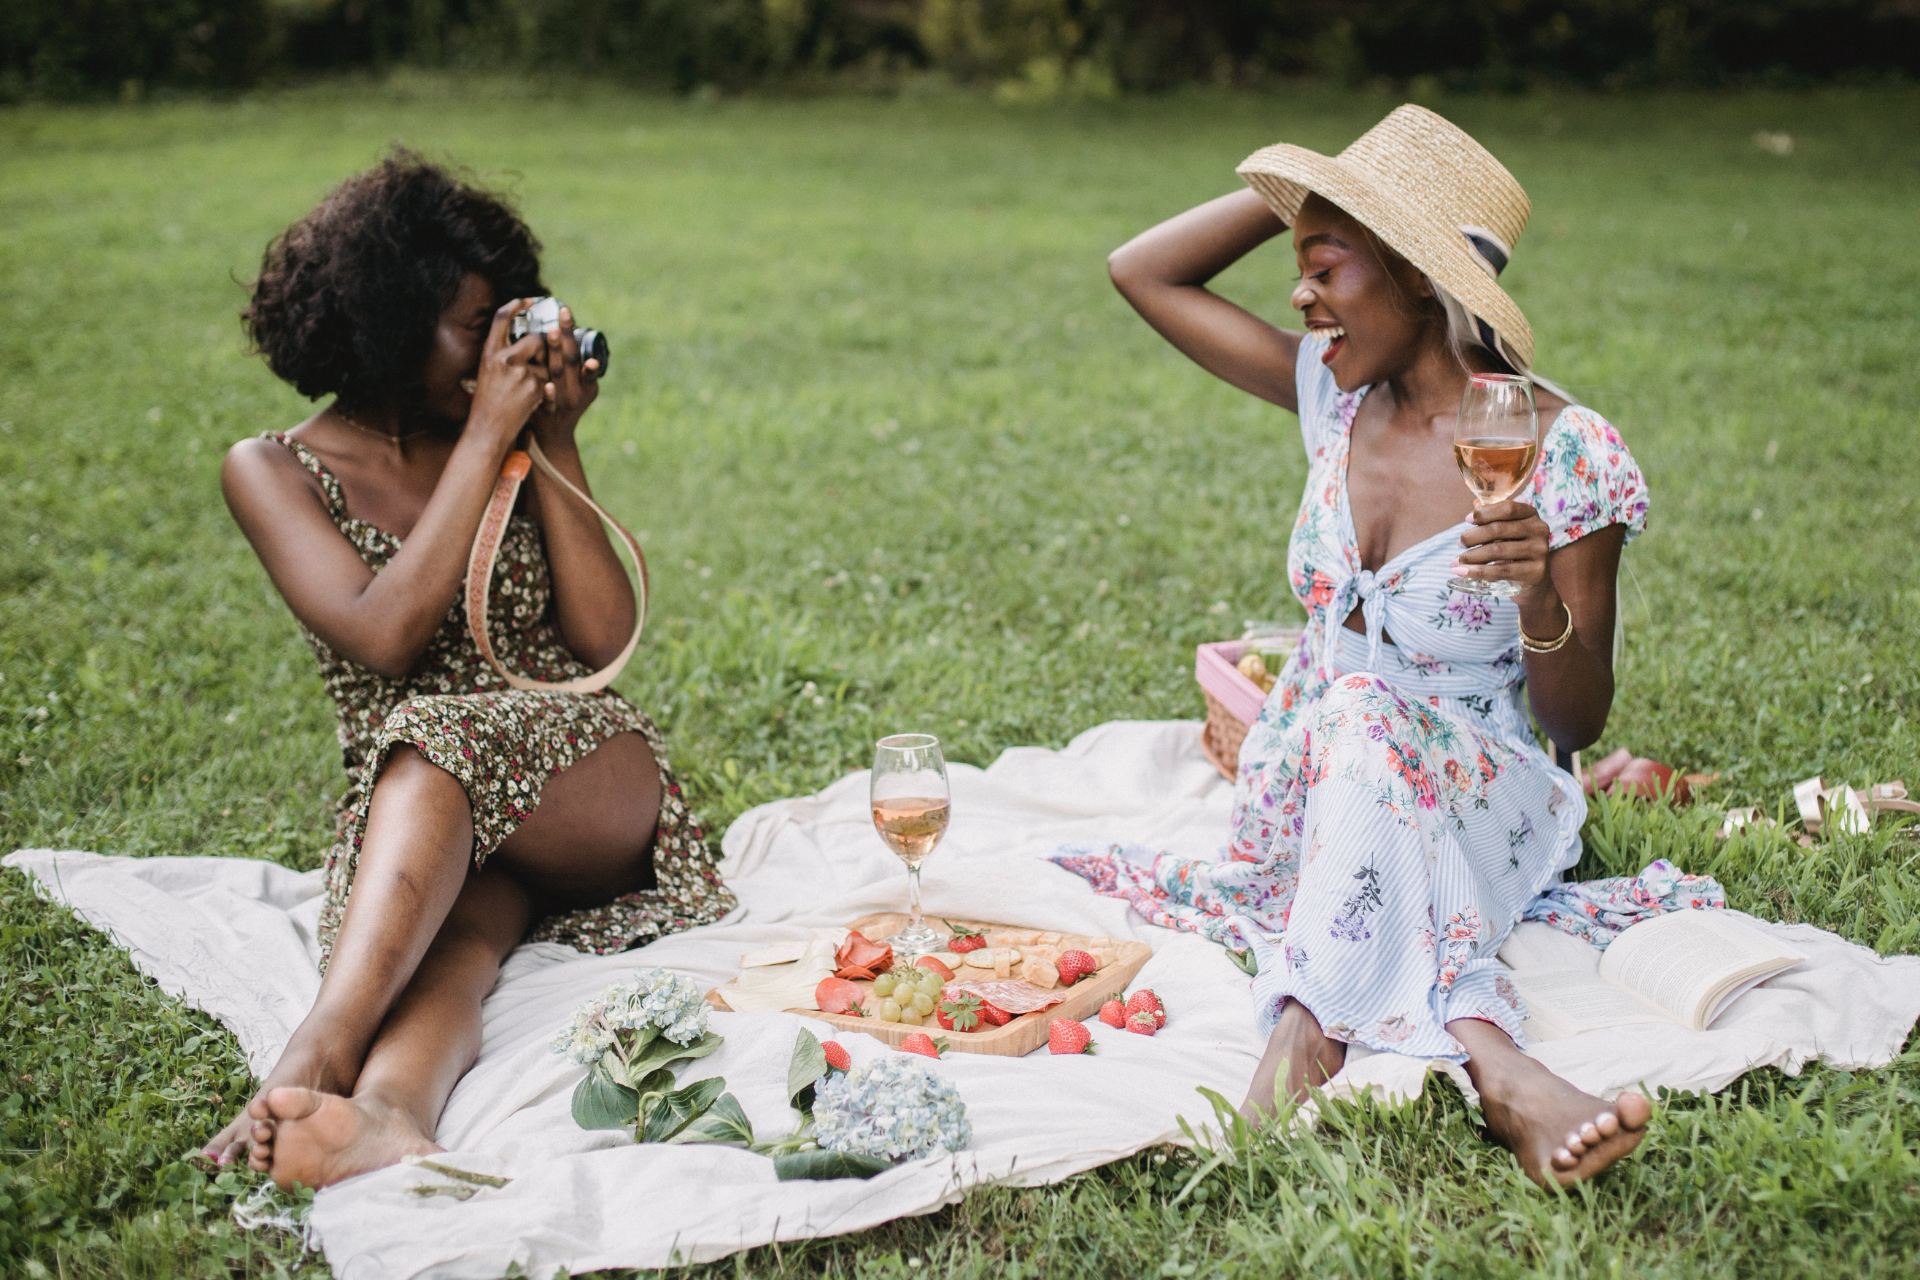 Two women sat having a picnic